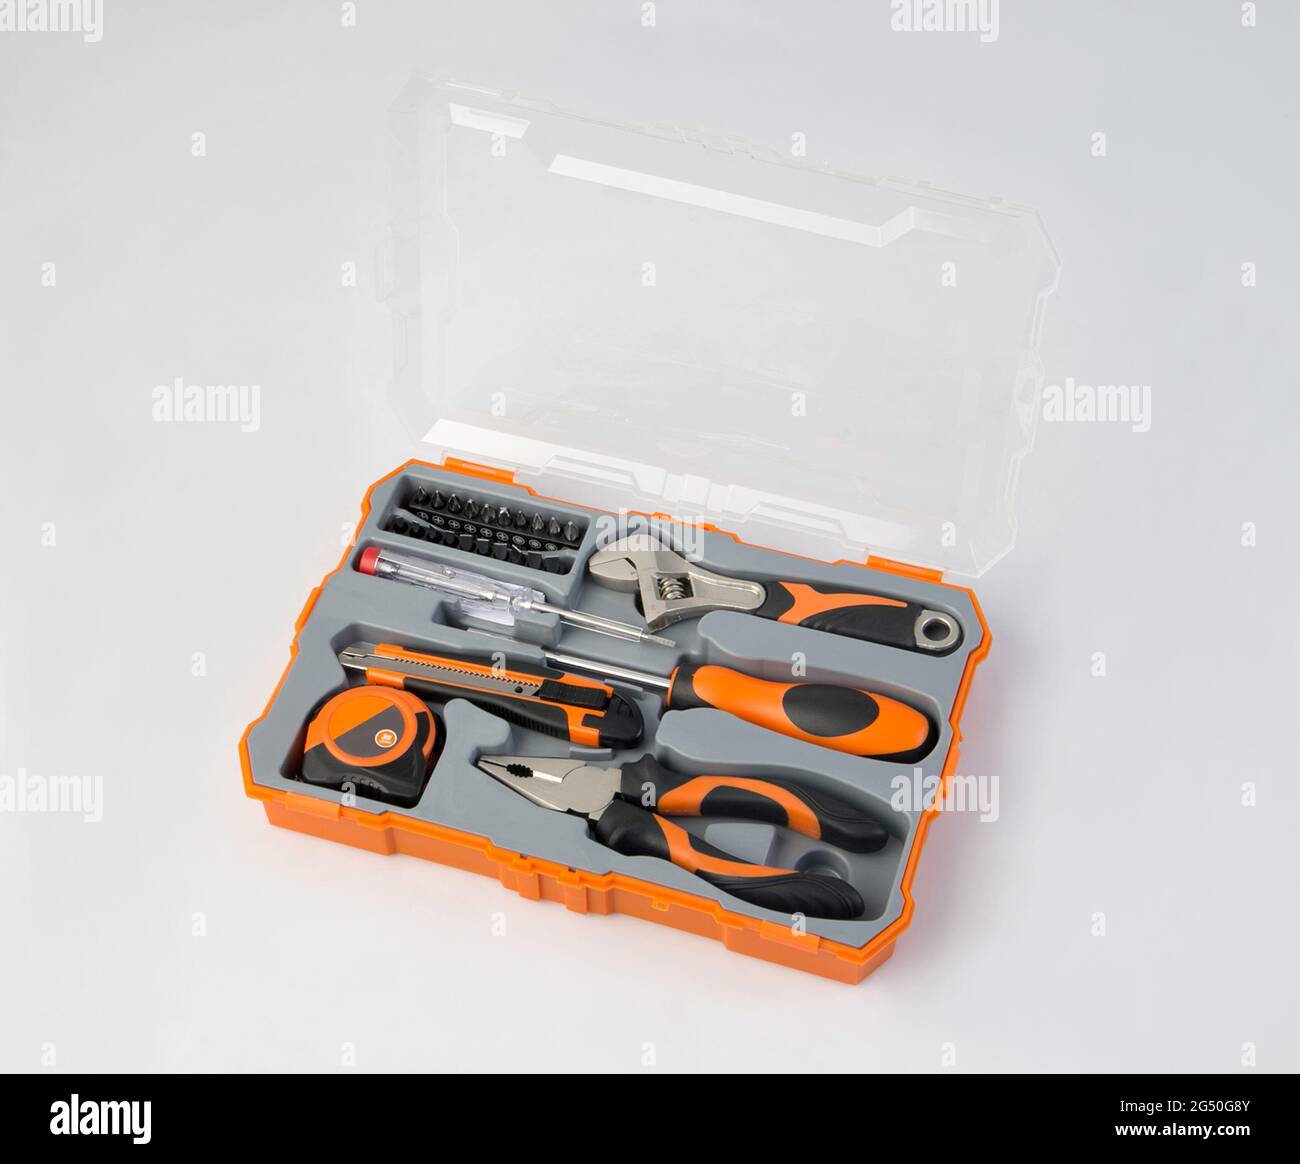 Orangefarbener Werkzeugkasten mit isoliertem Instrument und Werkzeugen auf weißem Hintergrund Stockfoto